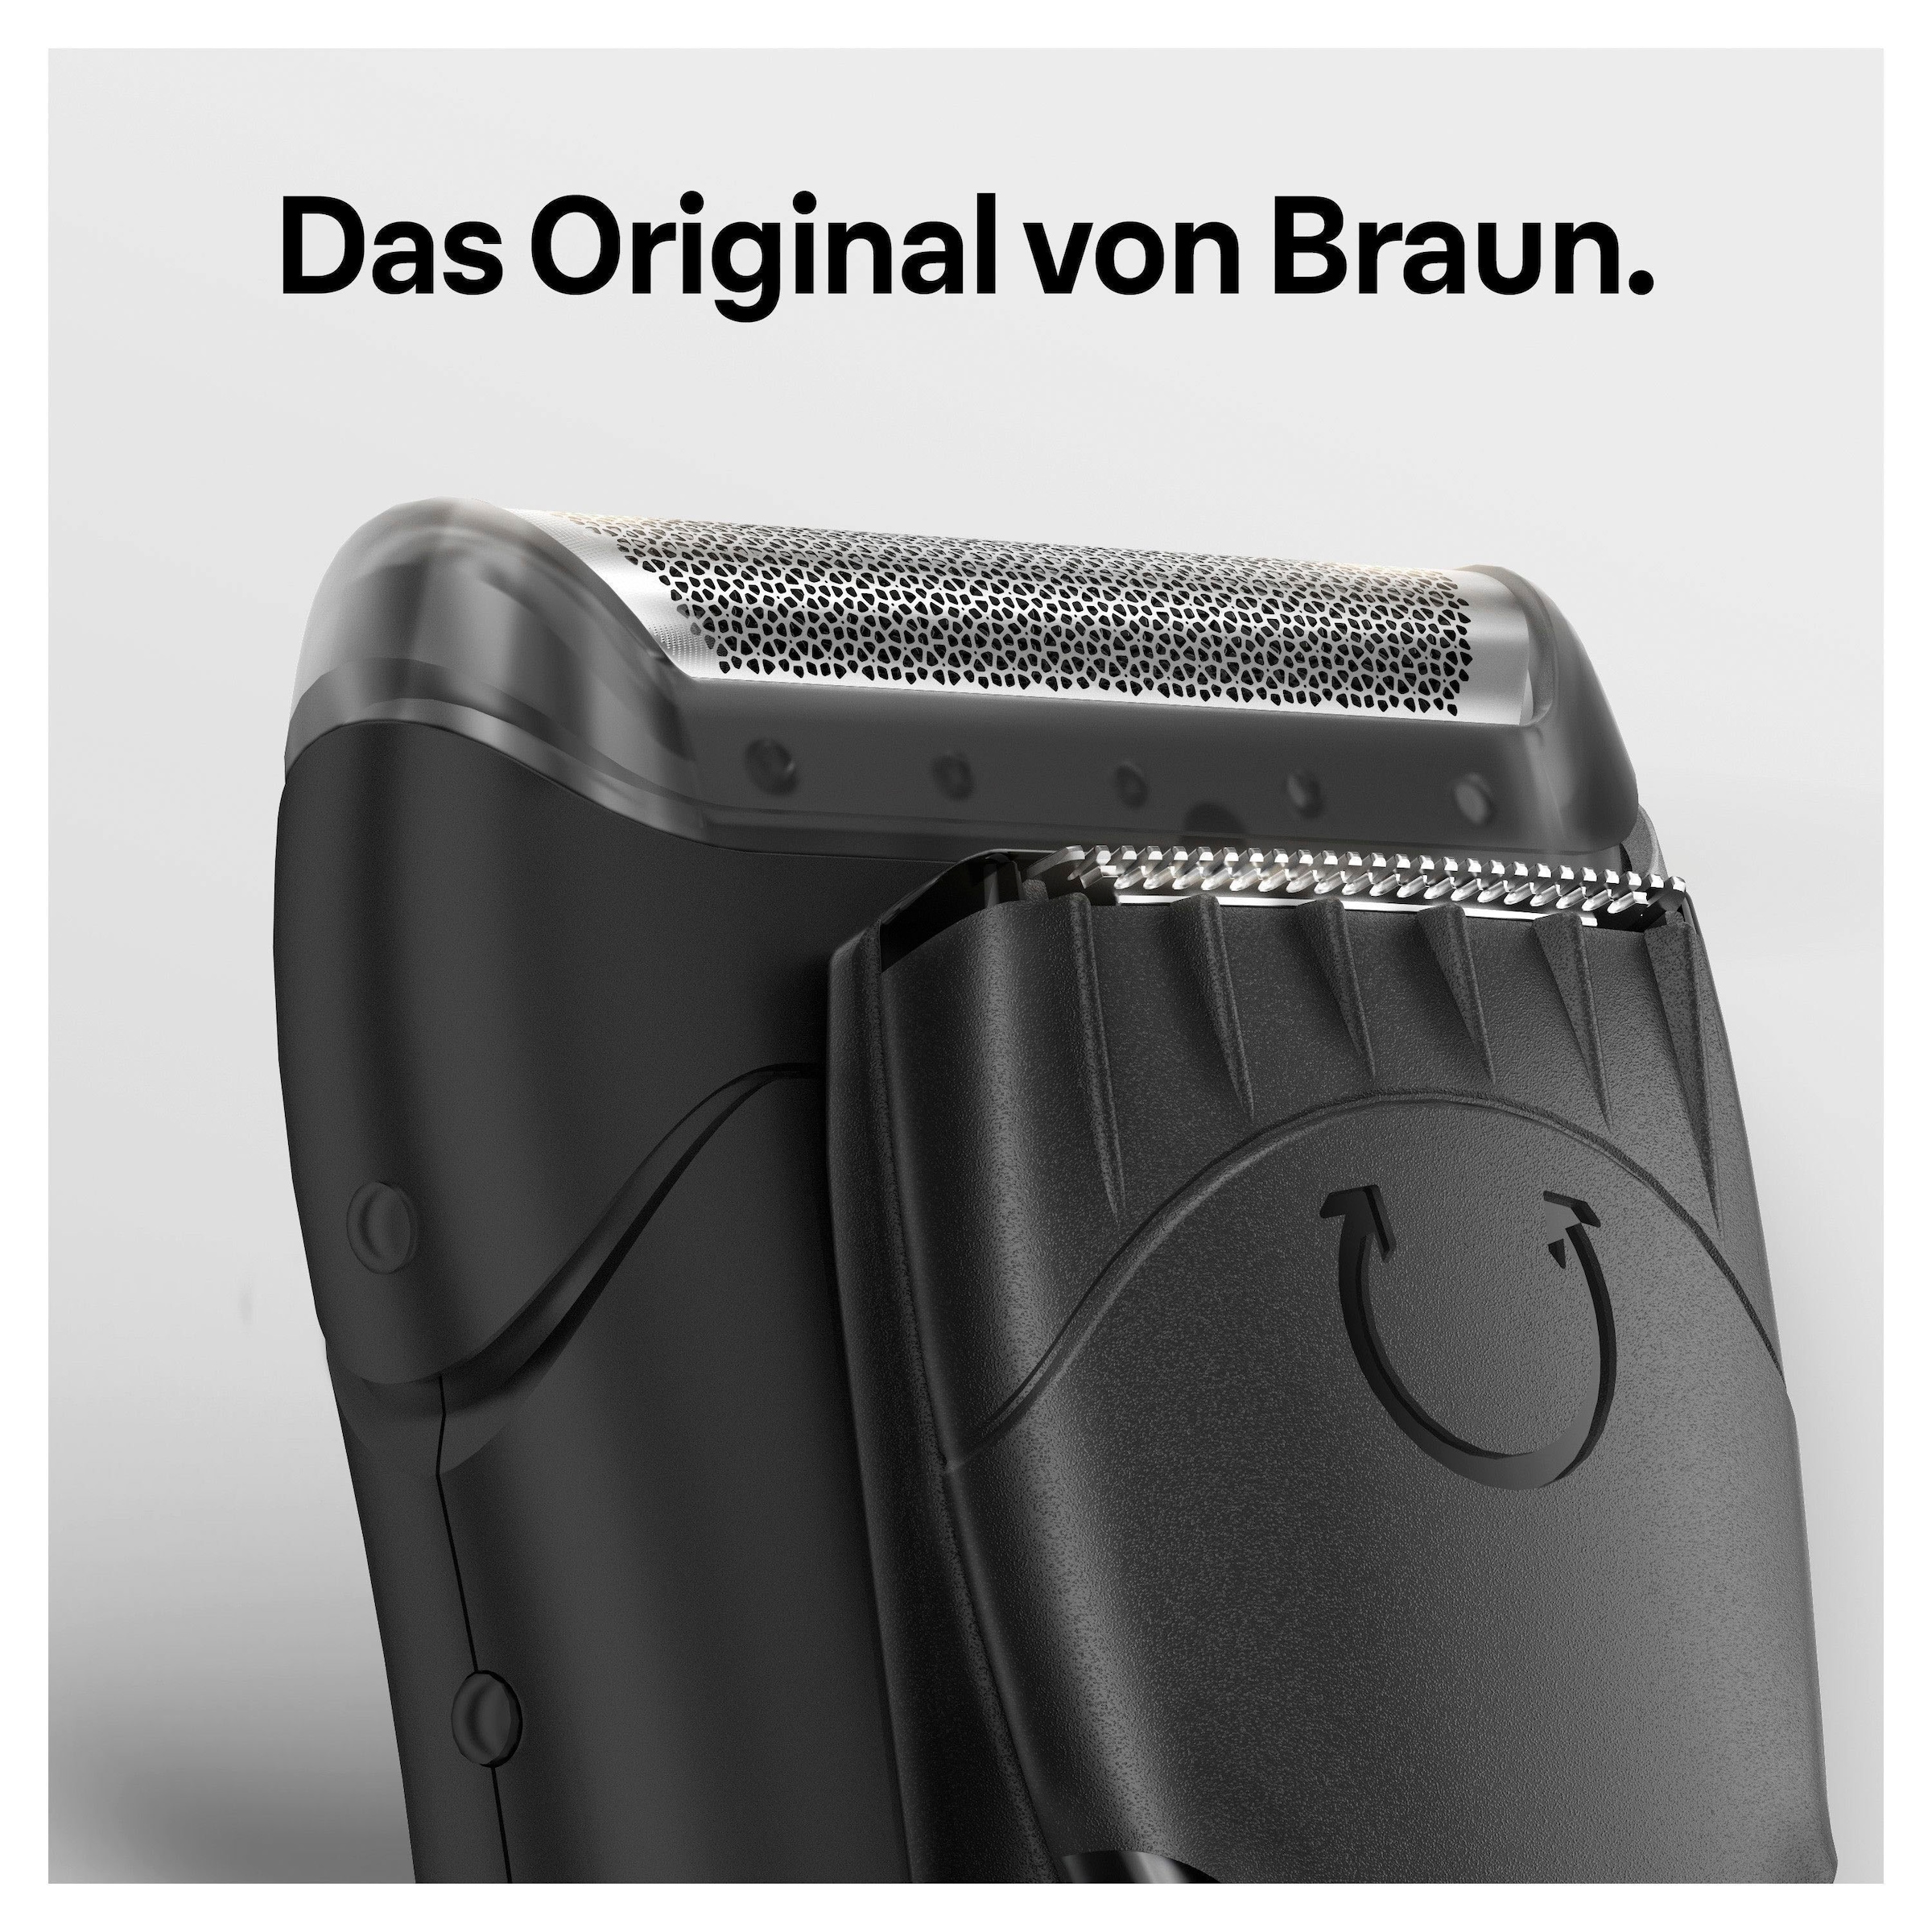 Braun Ersatzscherteil »Series 1 10B«, kompatibel mit cruZer und Series 1 Rasierern